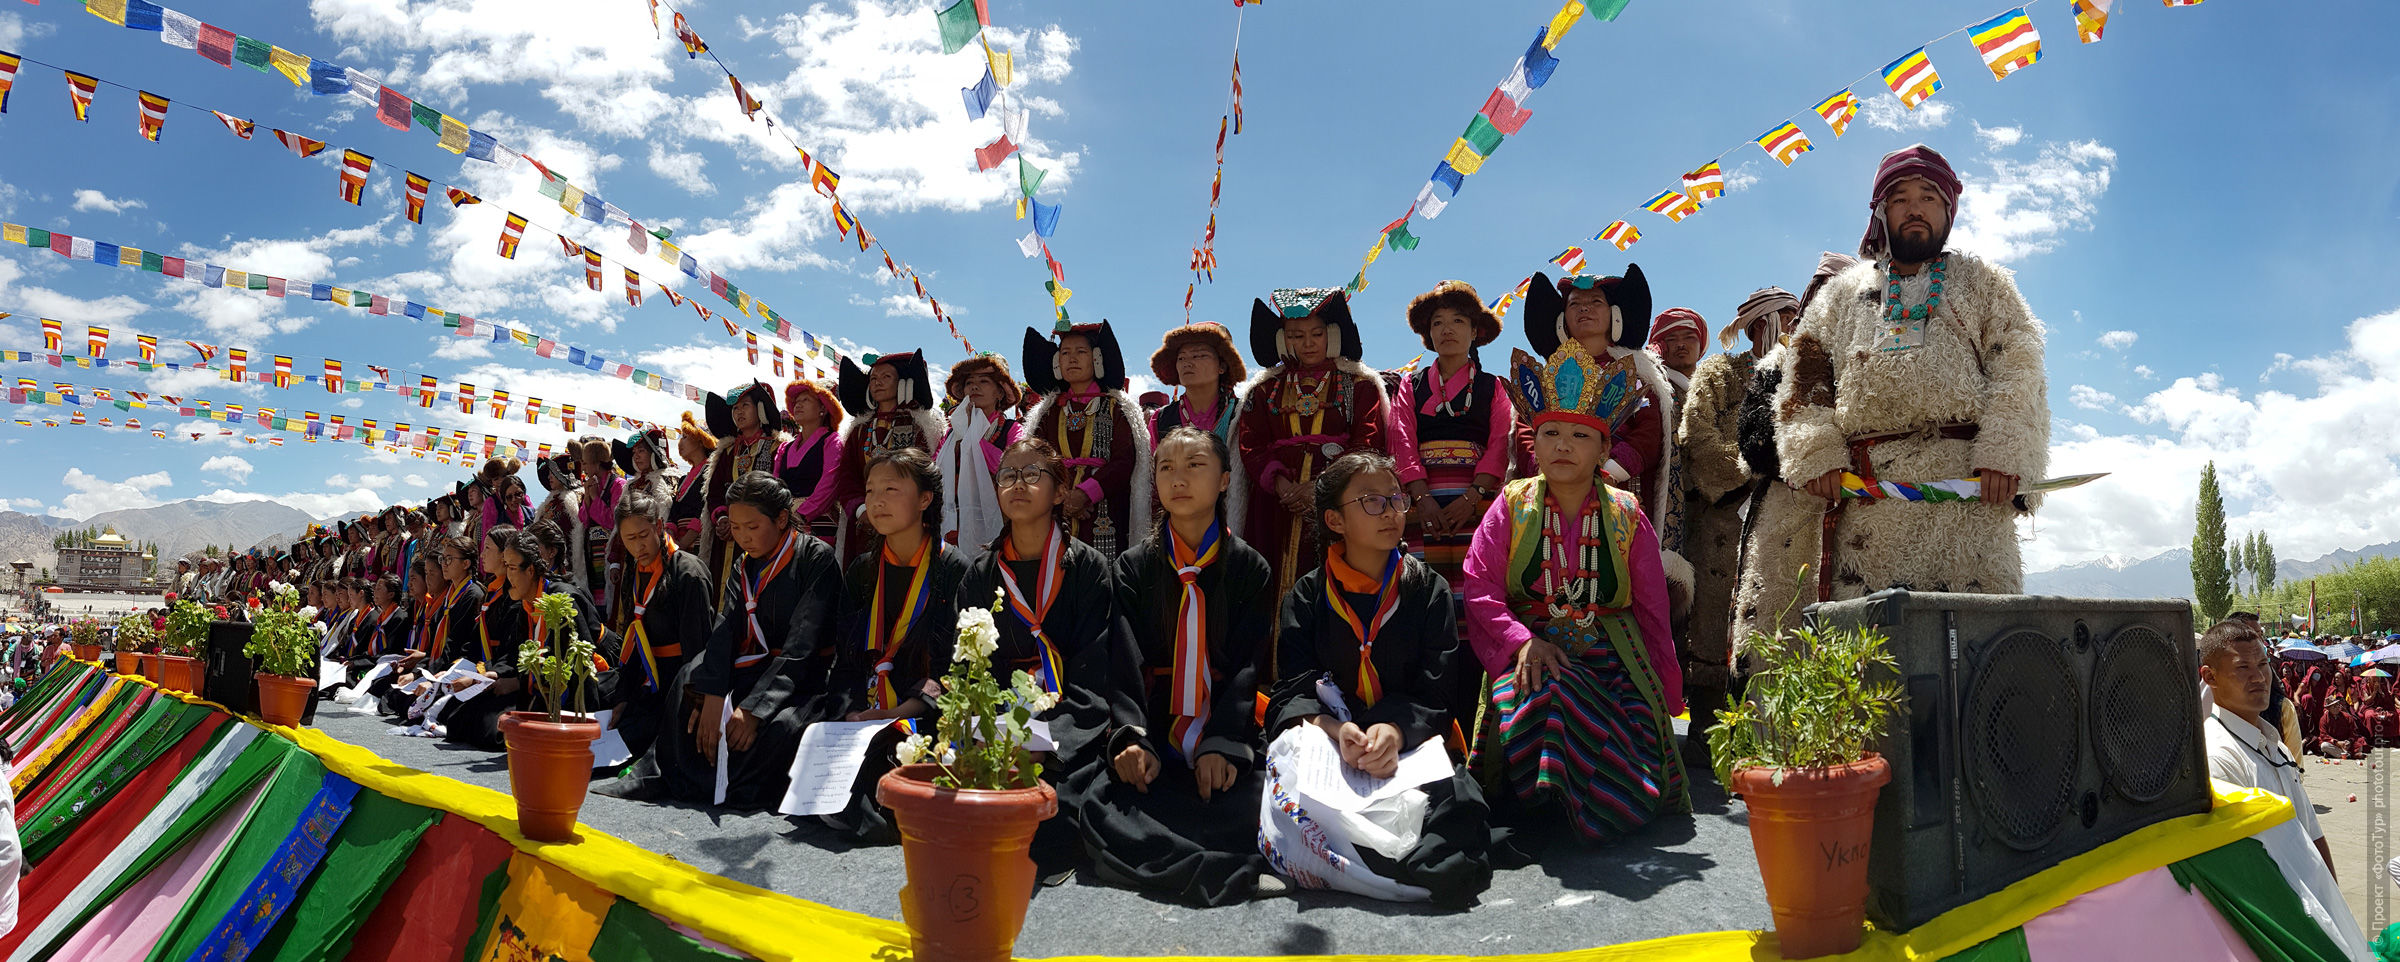 Празднование дня рождения Его Святейшества Далай Ламы XIV  d Kflfr[t? 2018 ujl/